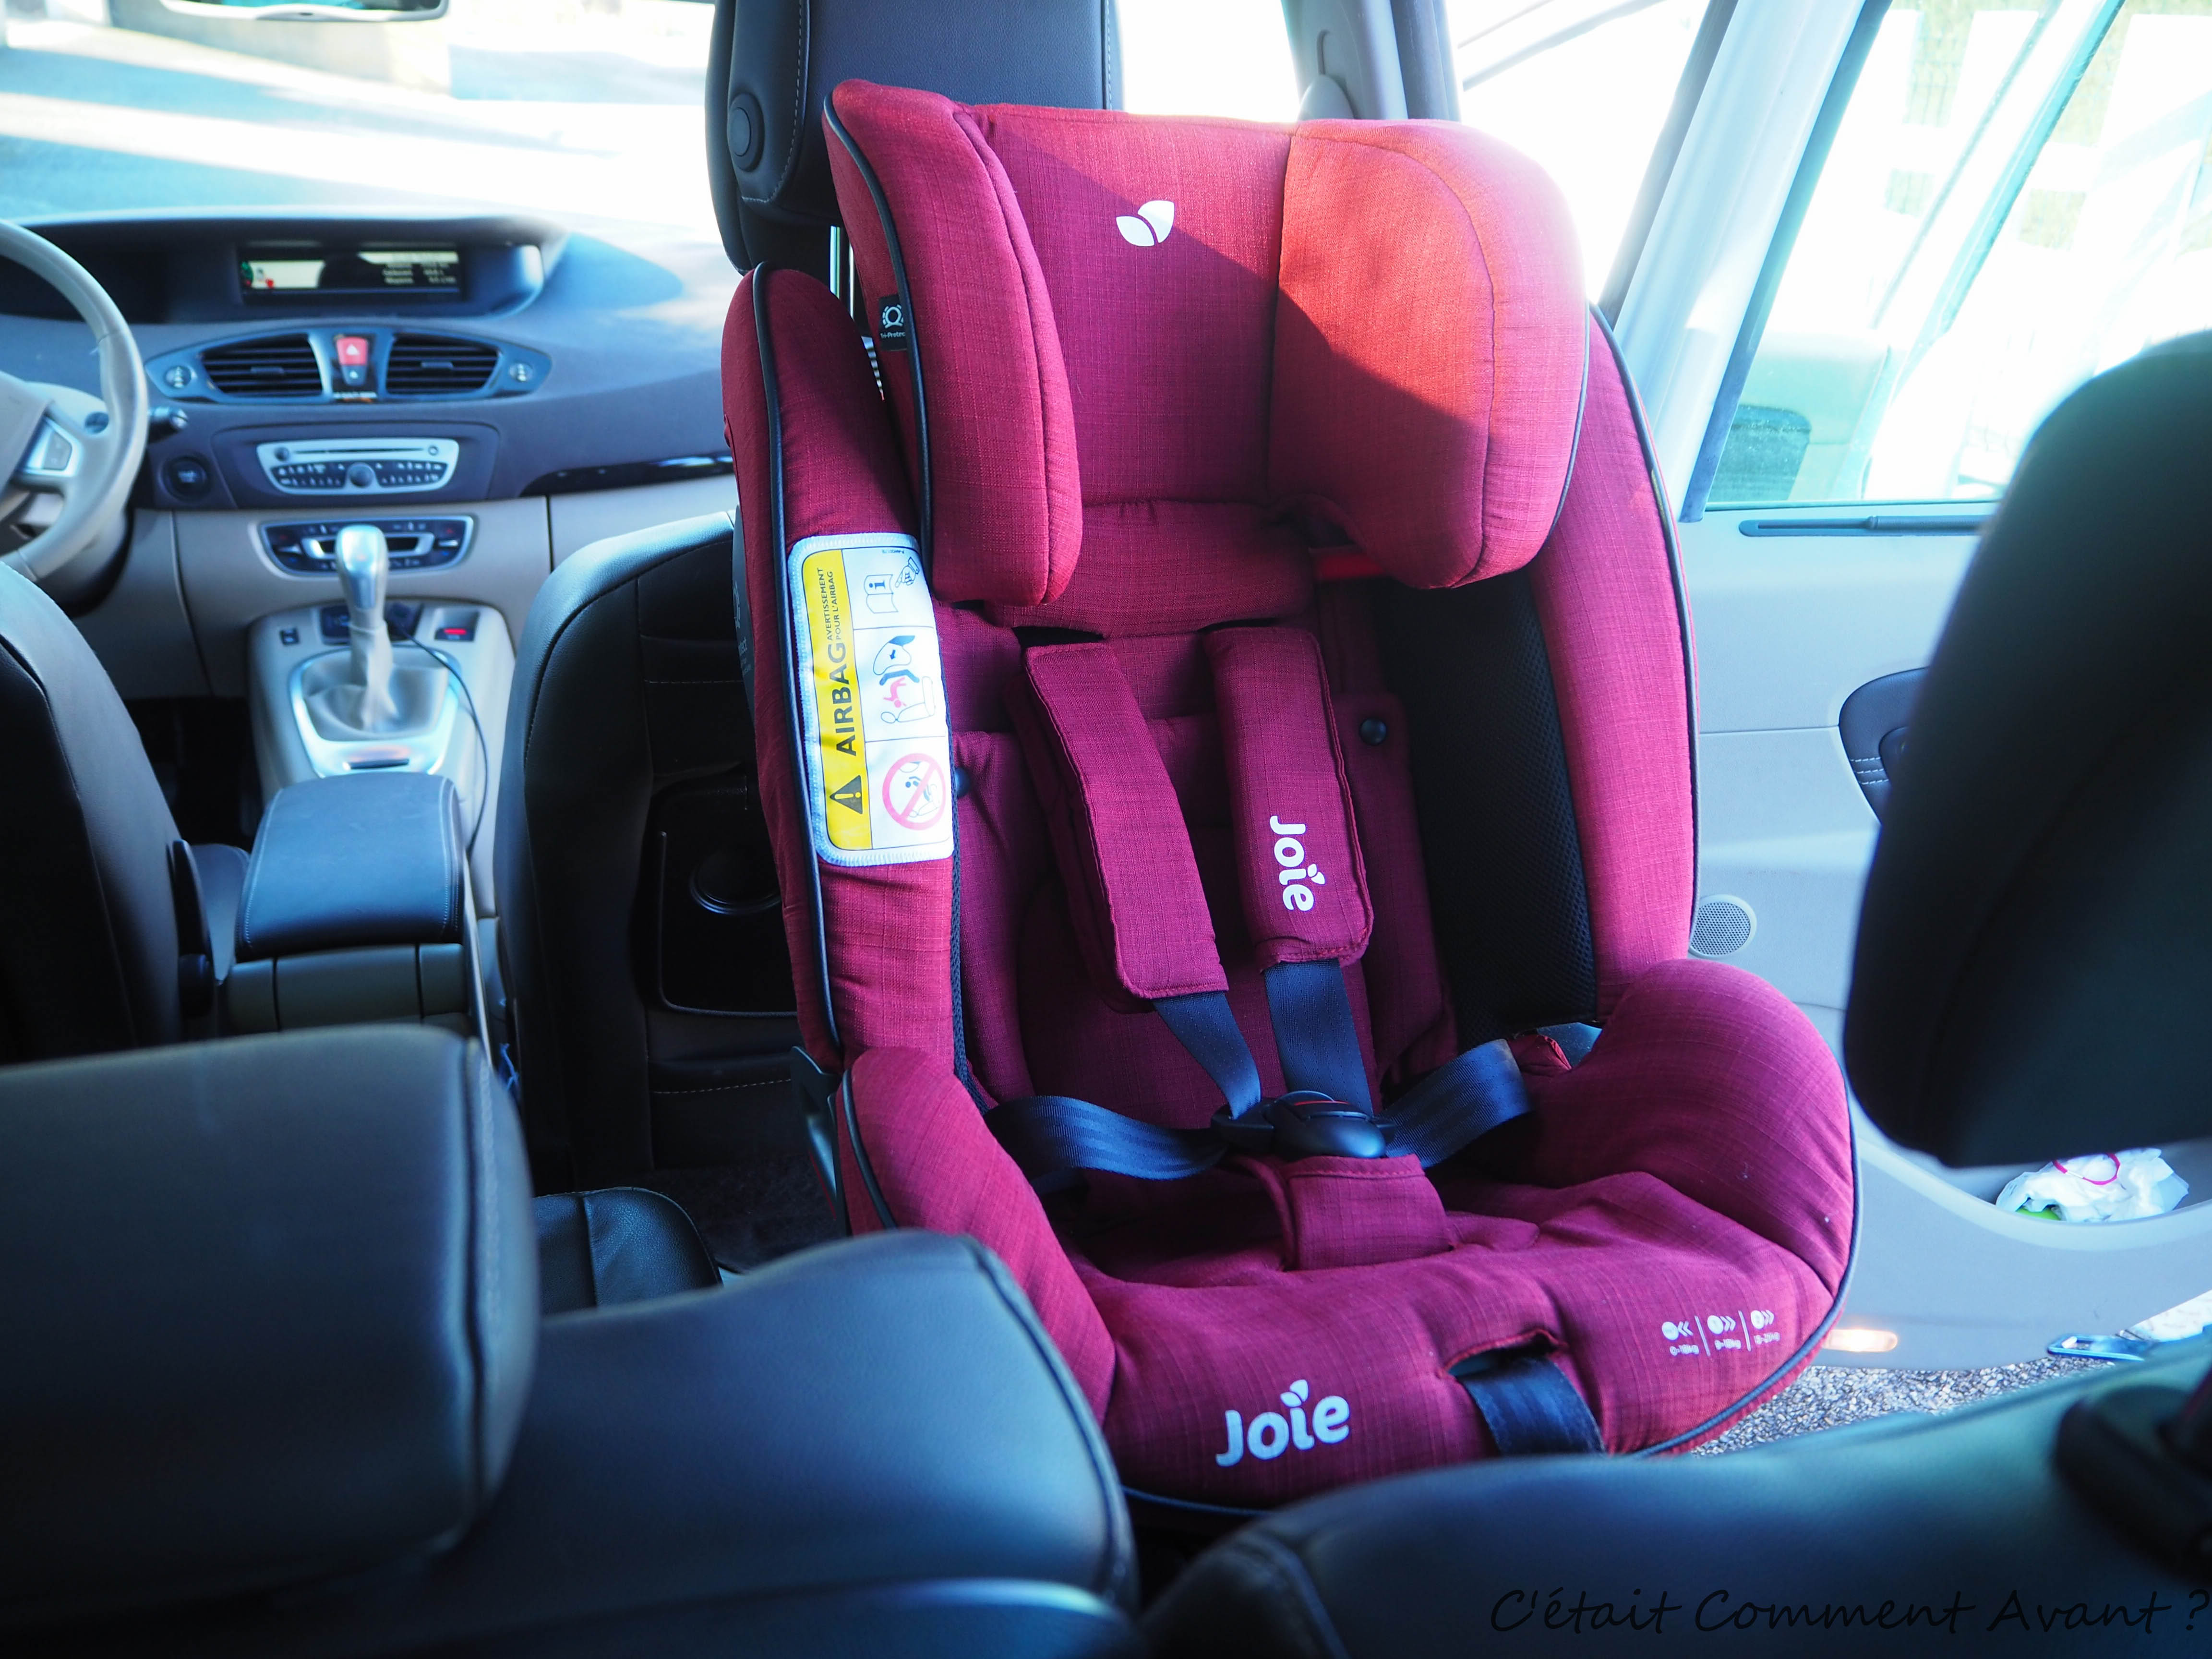 Comment attacher et serrer les ceintures dans un siège auto